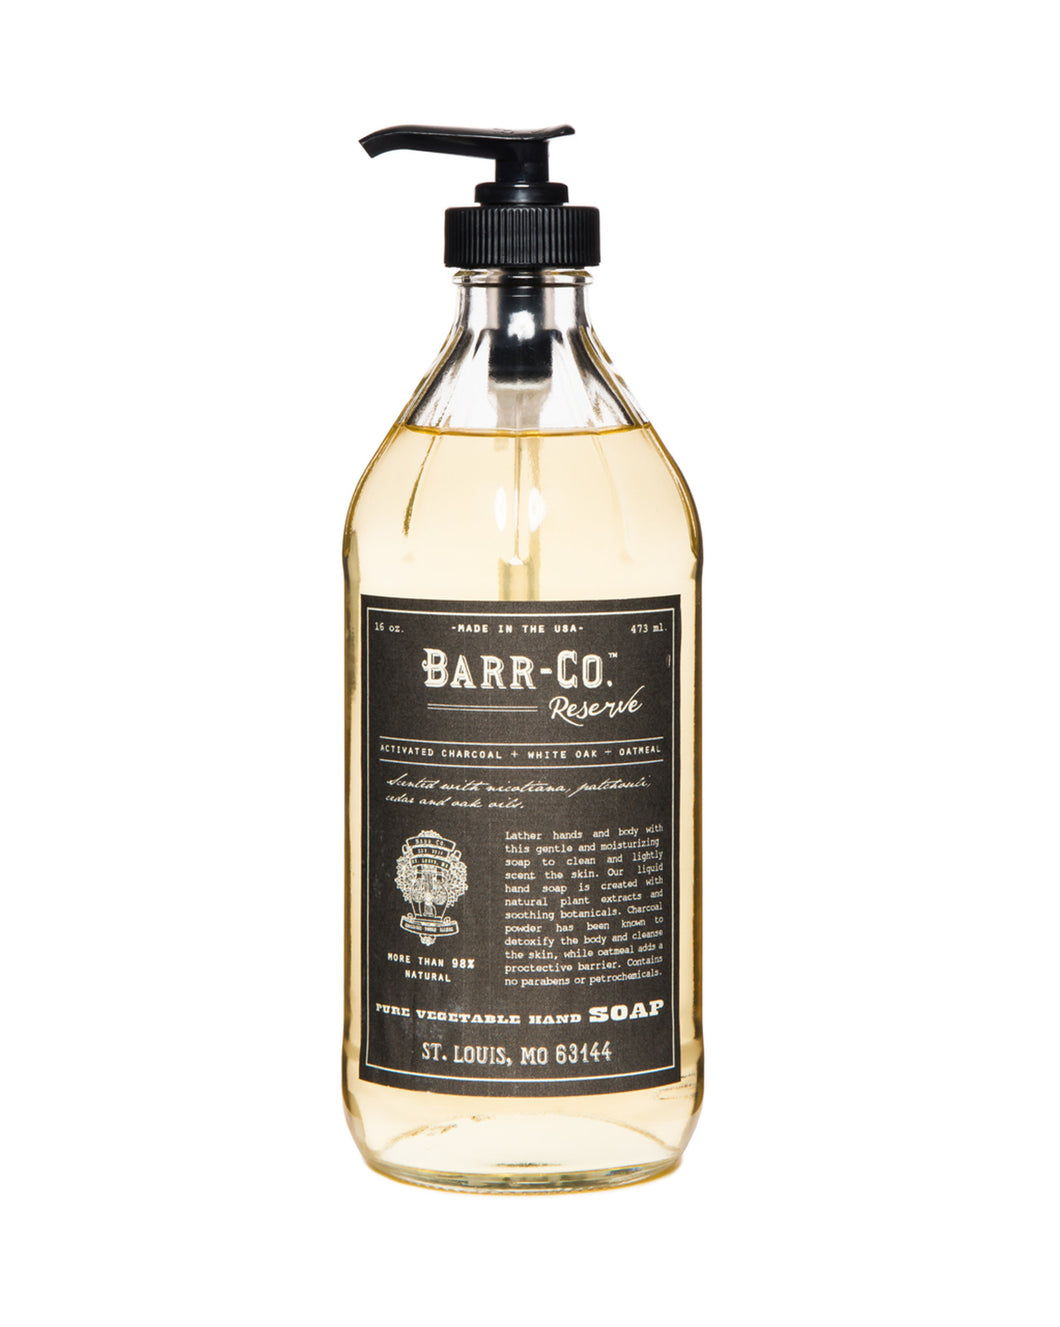 Barr-Co. Reserve Liquid Hand Soap